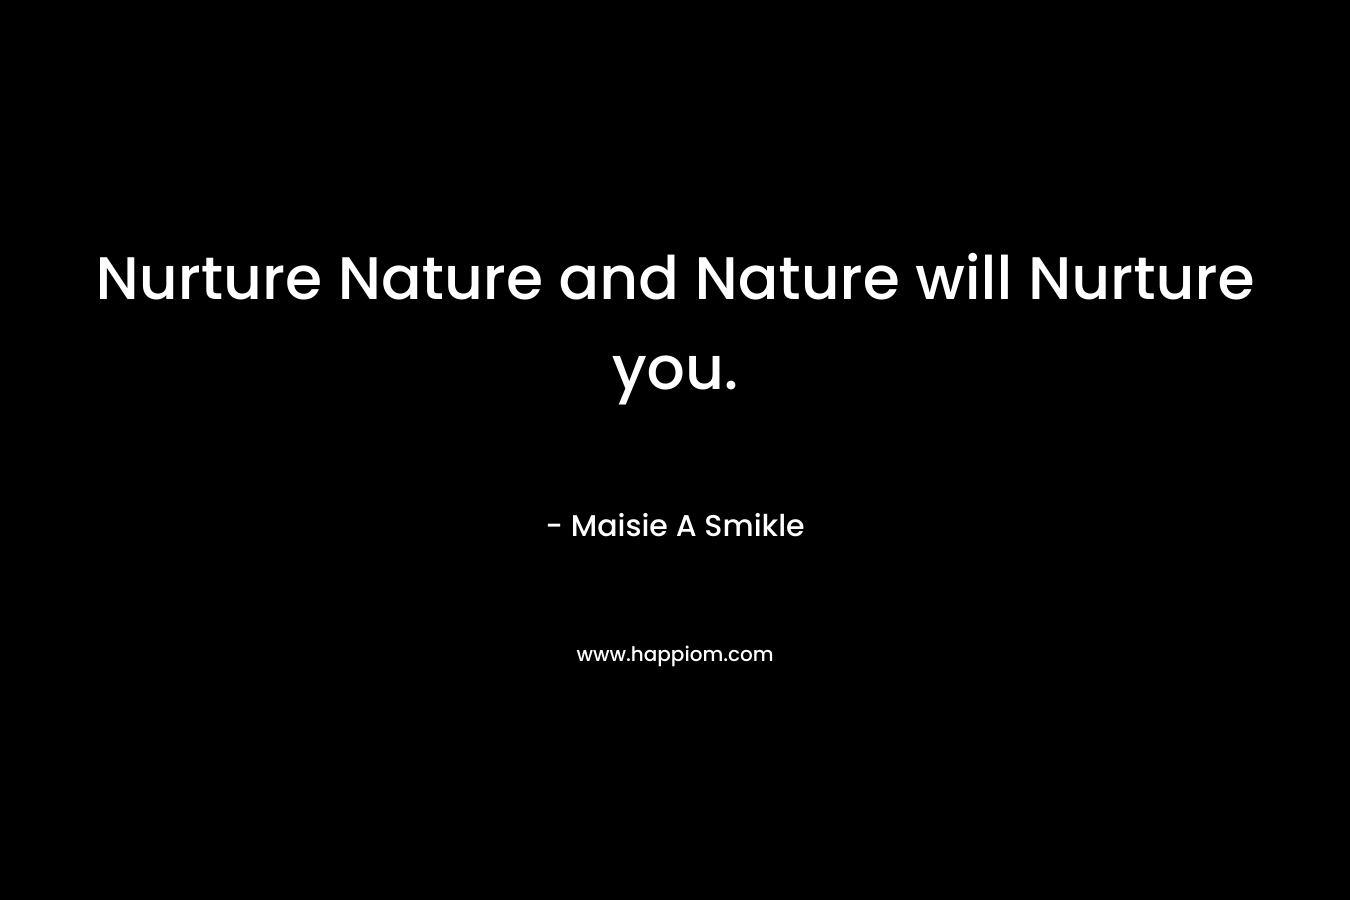 Nurture Nature and Nature will Nurture you.